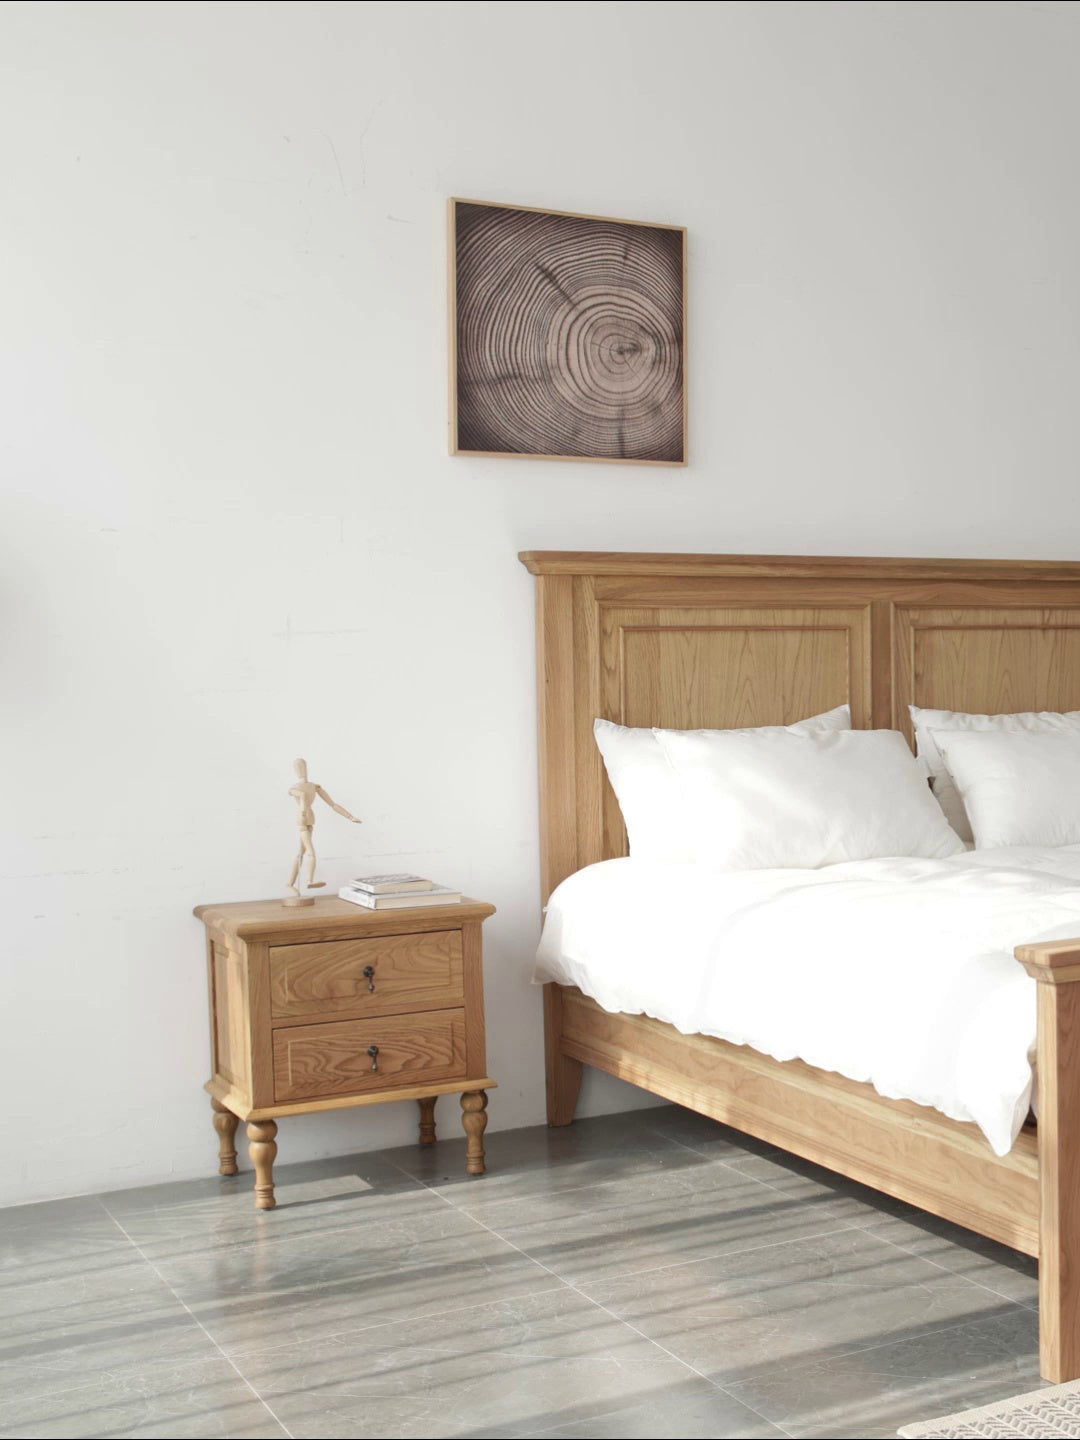 سرير من خشب البلوط الفاتح، وإطار سرير من خشب البلوط، وأسرة بطابقين من خشب البلوط